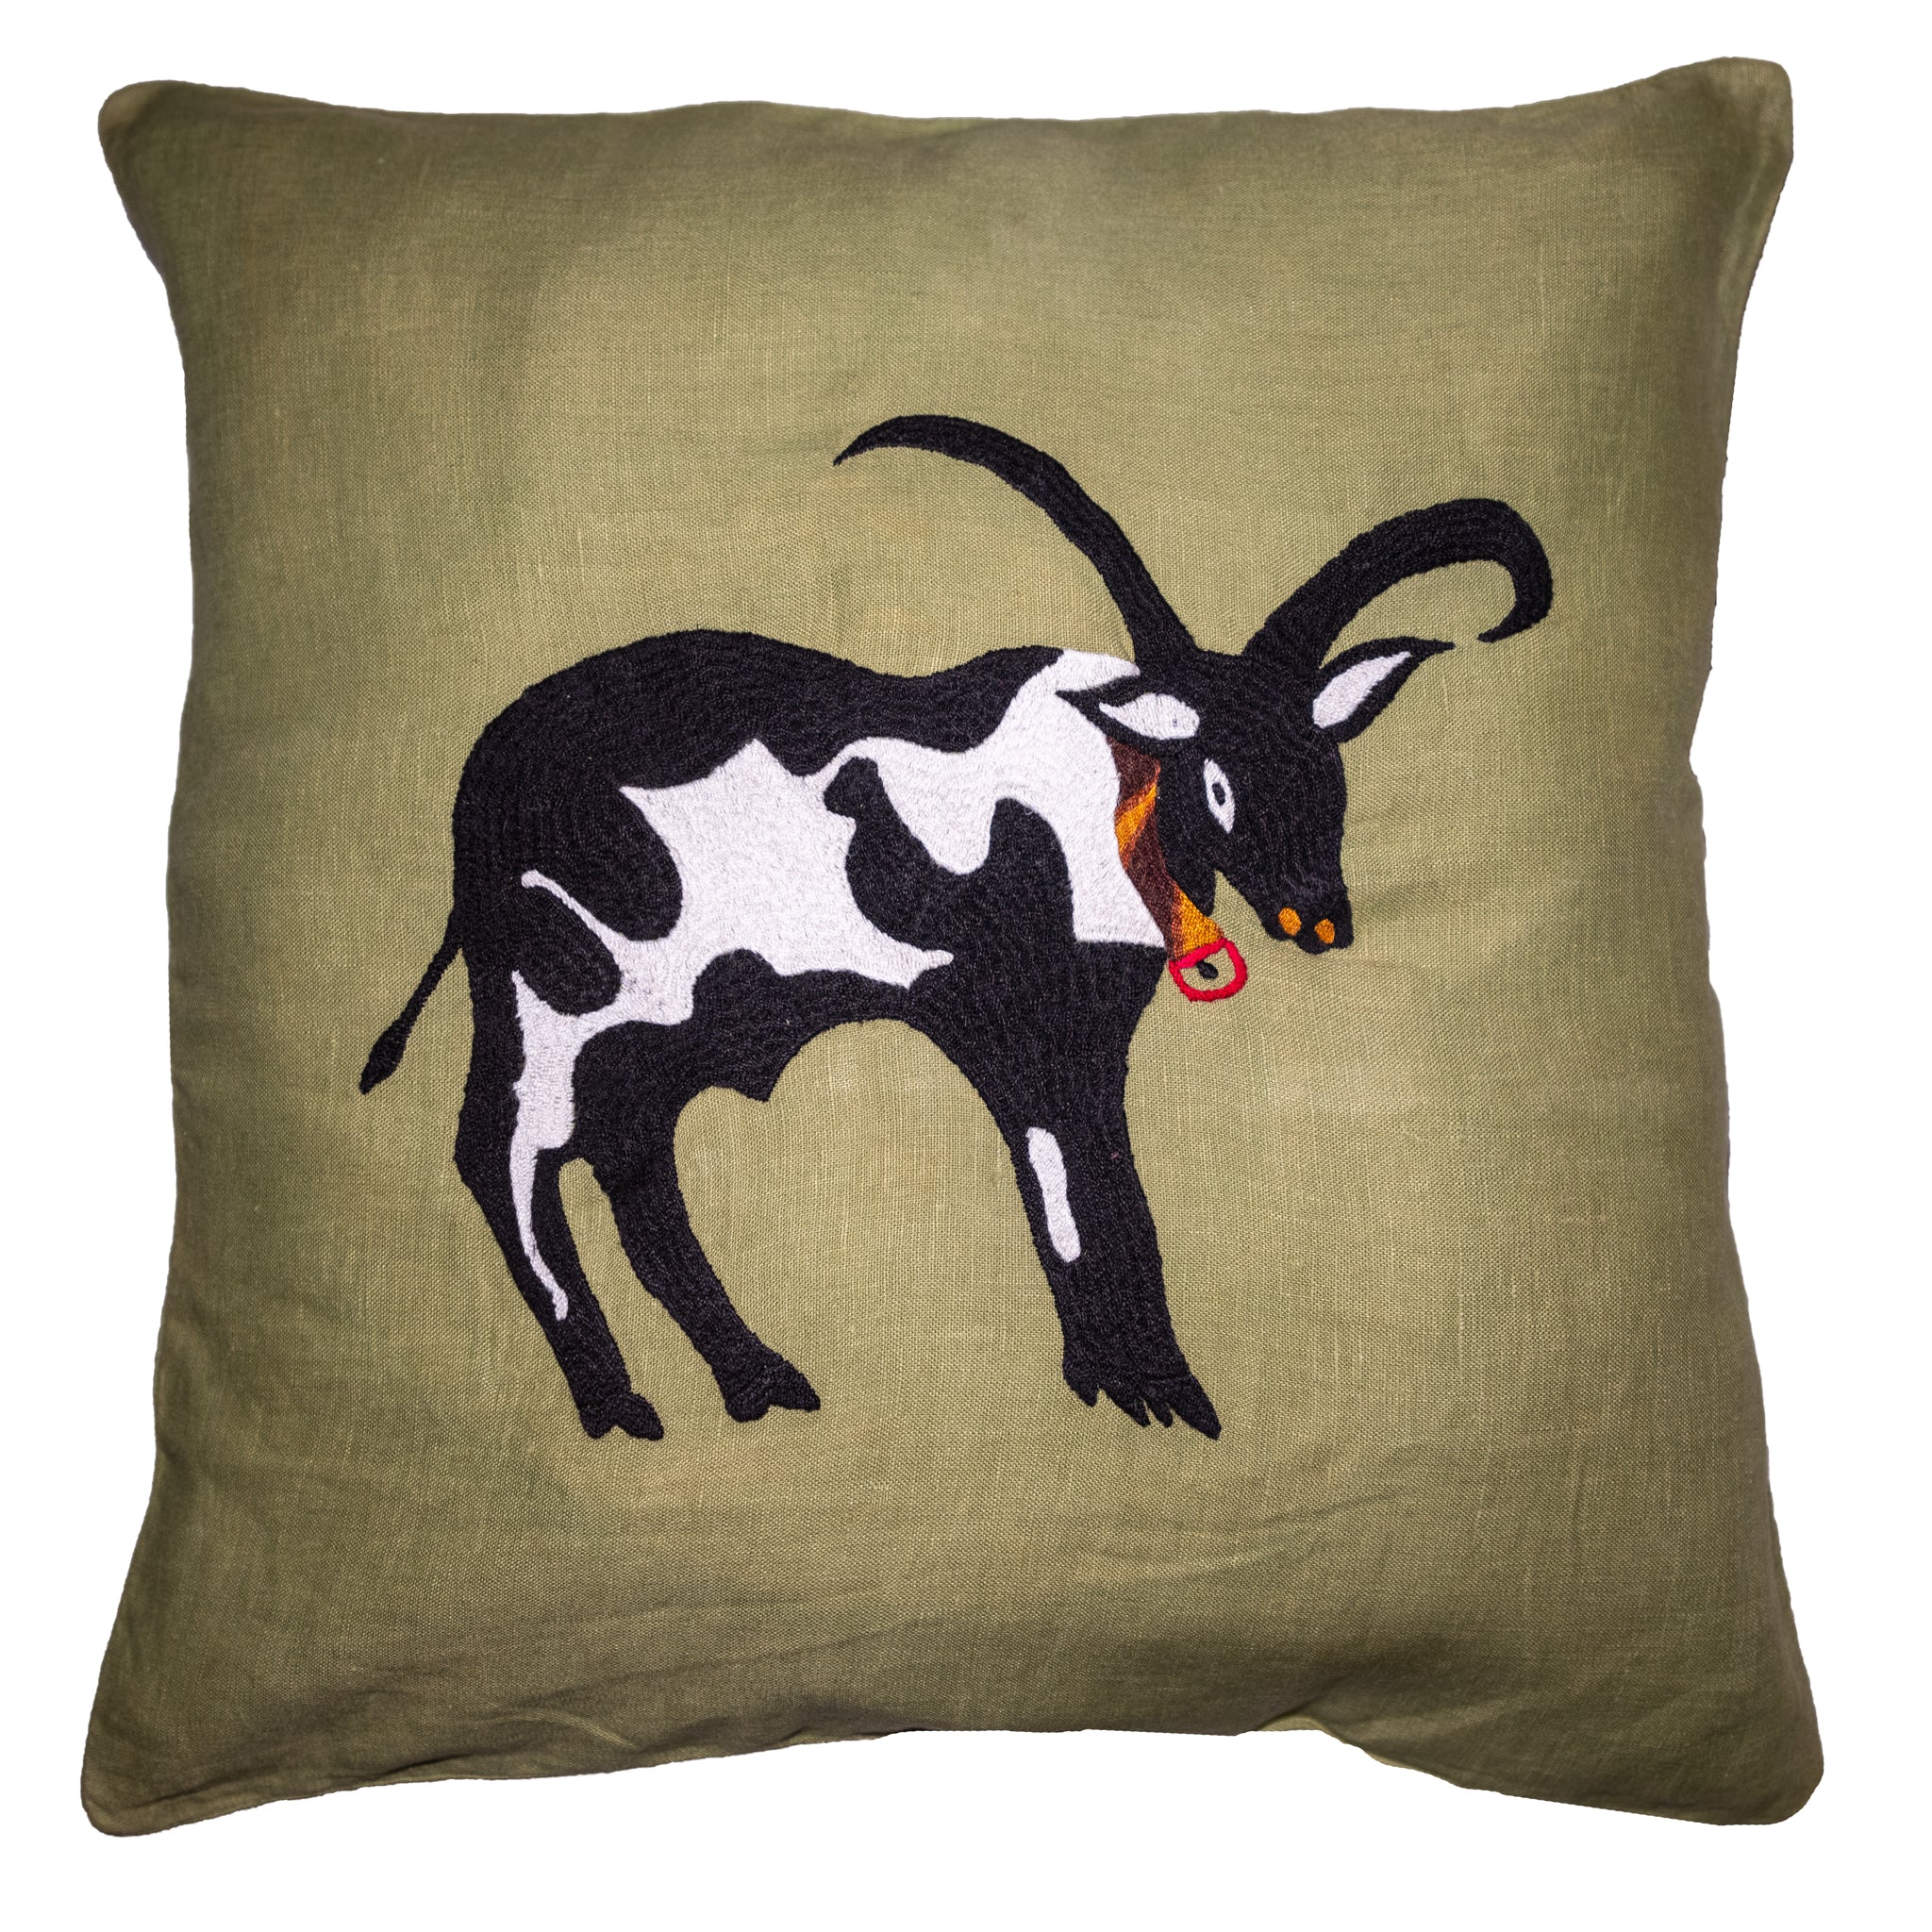 Cow pillow on green linen